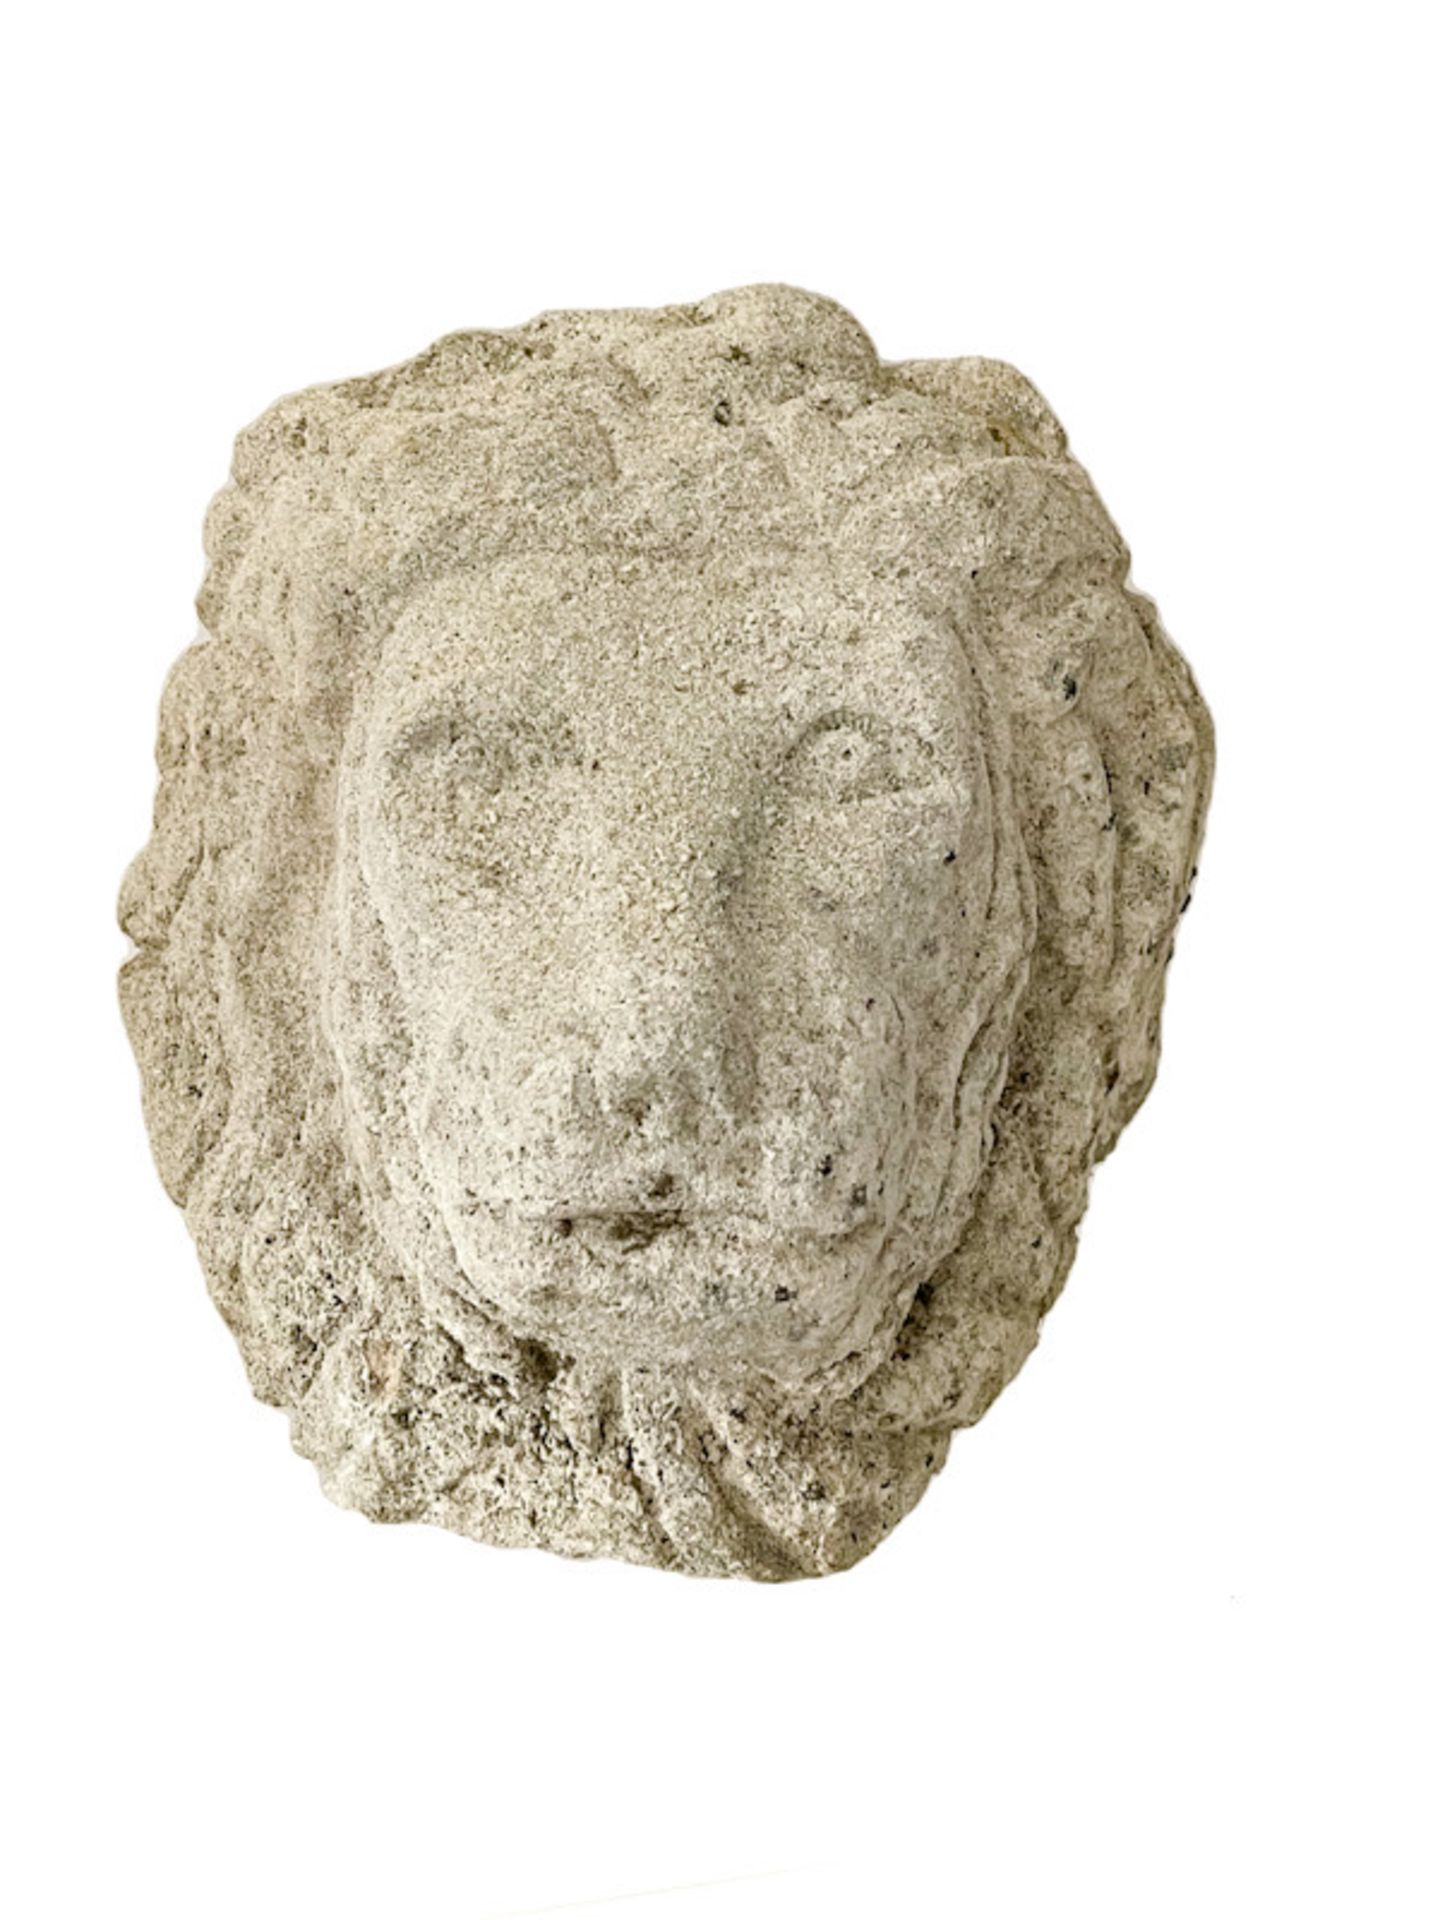 Renaissace Löwenkopf aus Sandstein - Bild 2 aus 7